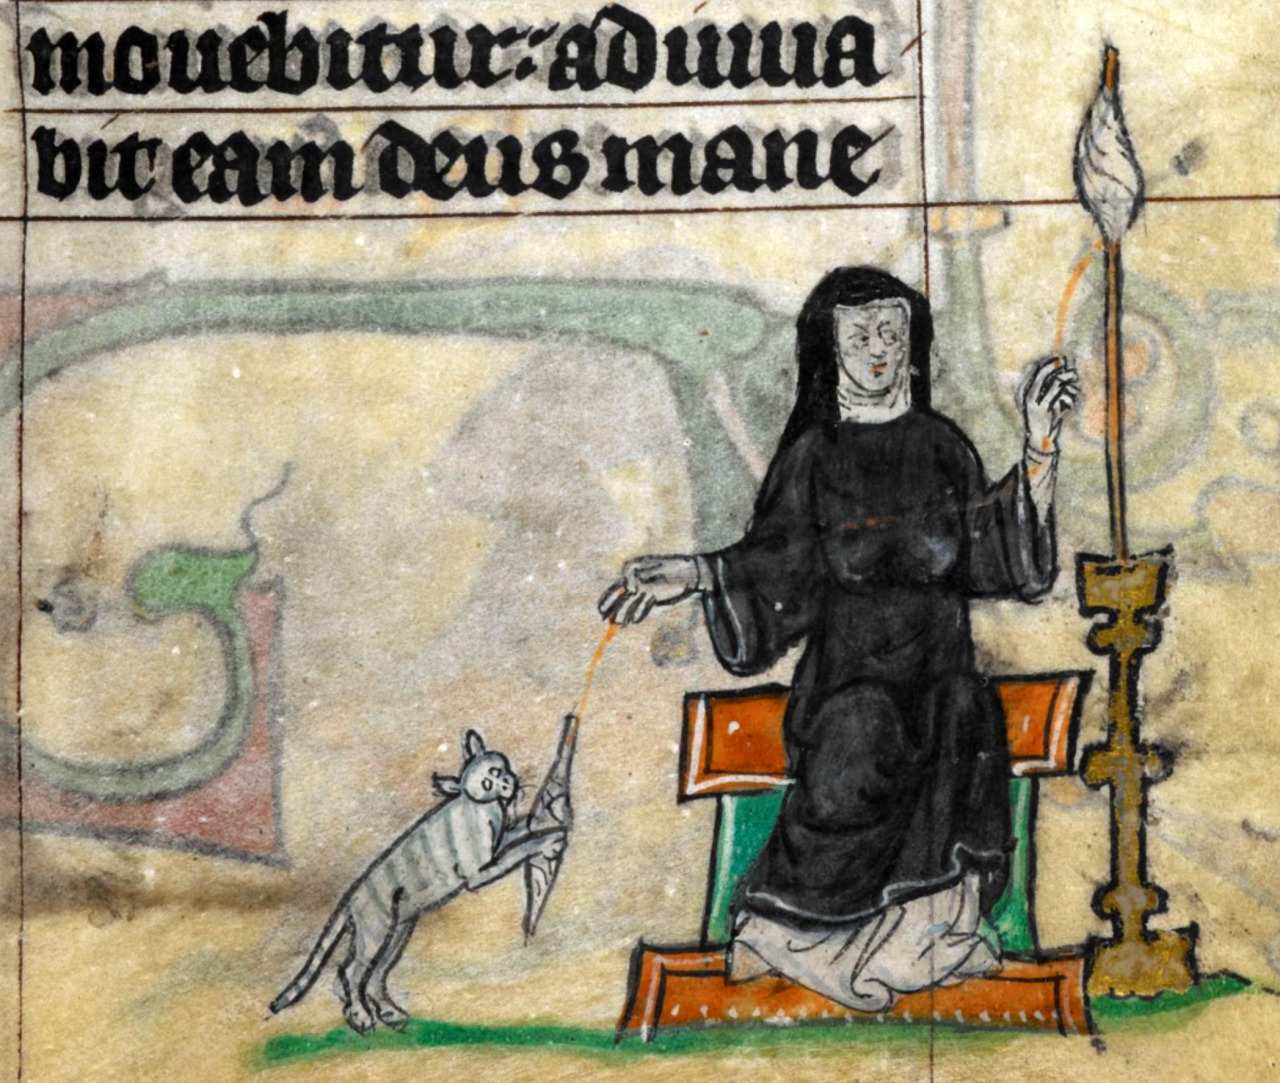 Tranh nữ tu đang quay sợi trong khi chú mèo cưng chơi cùng cục chỉ thời Trung cổ